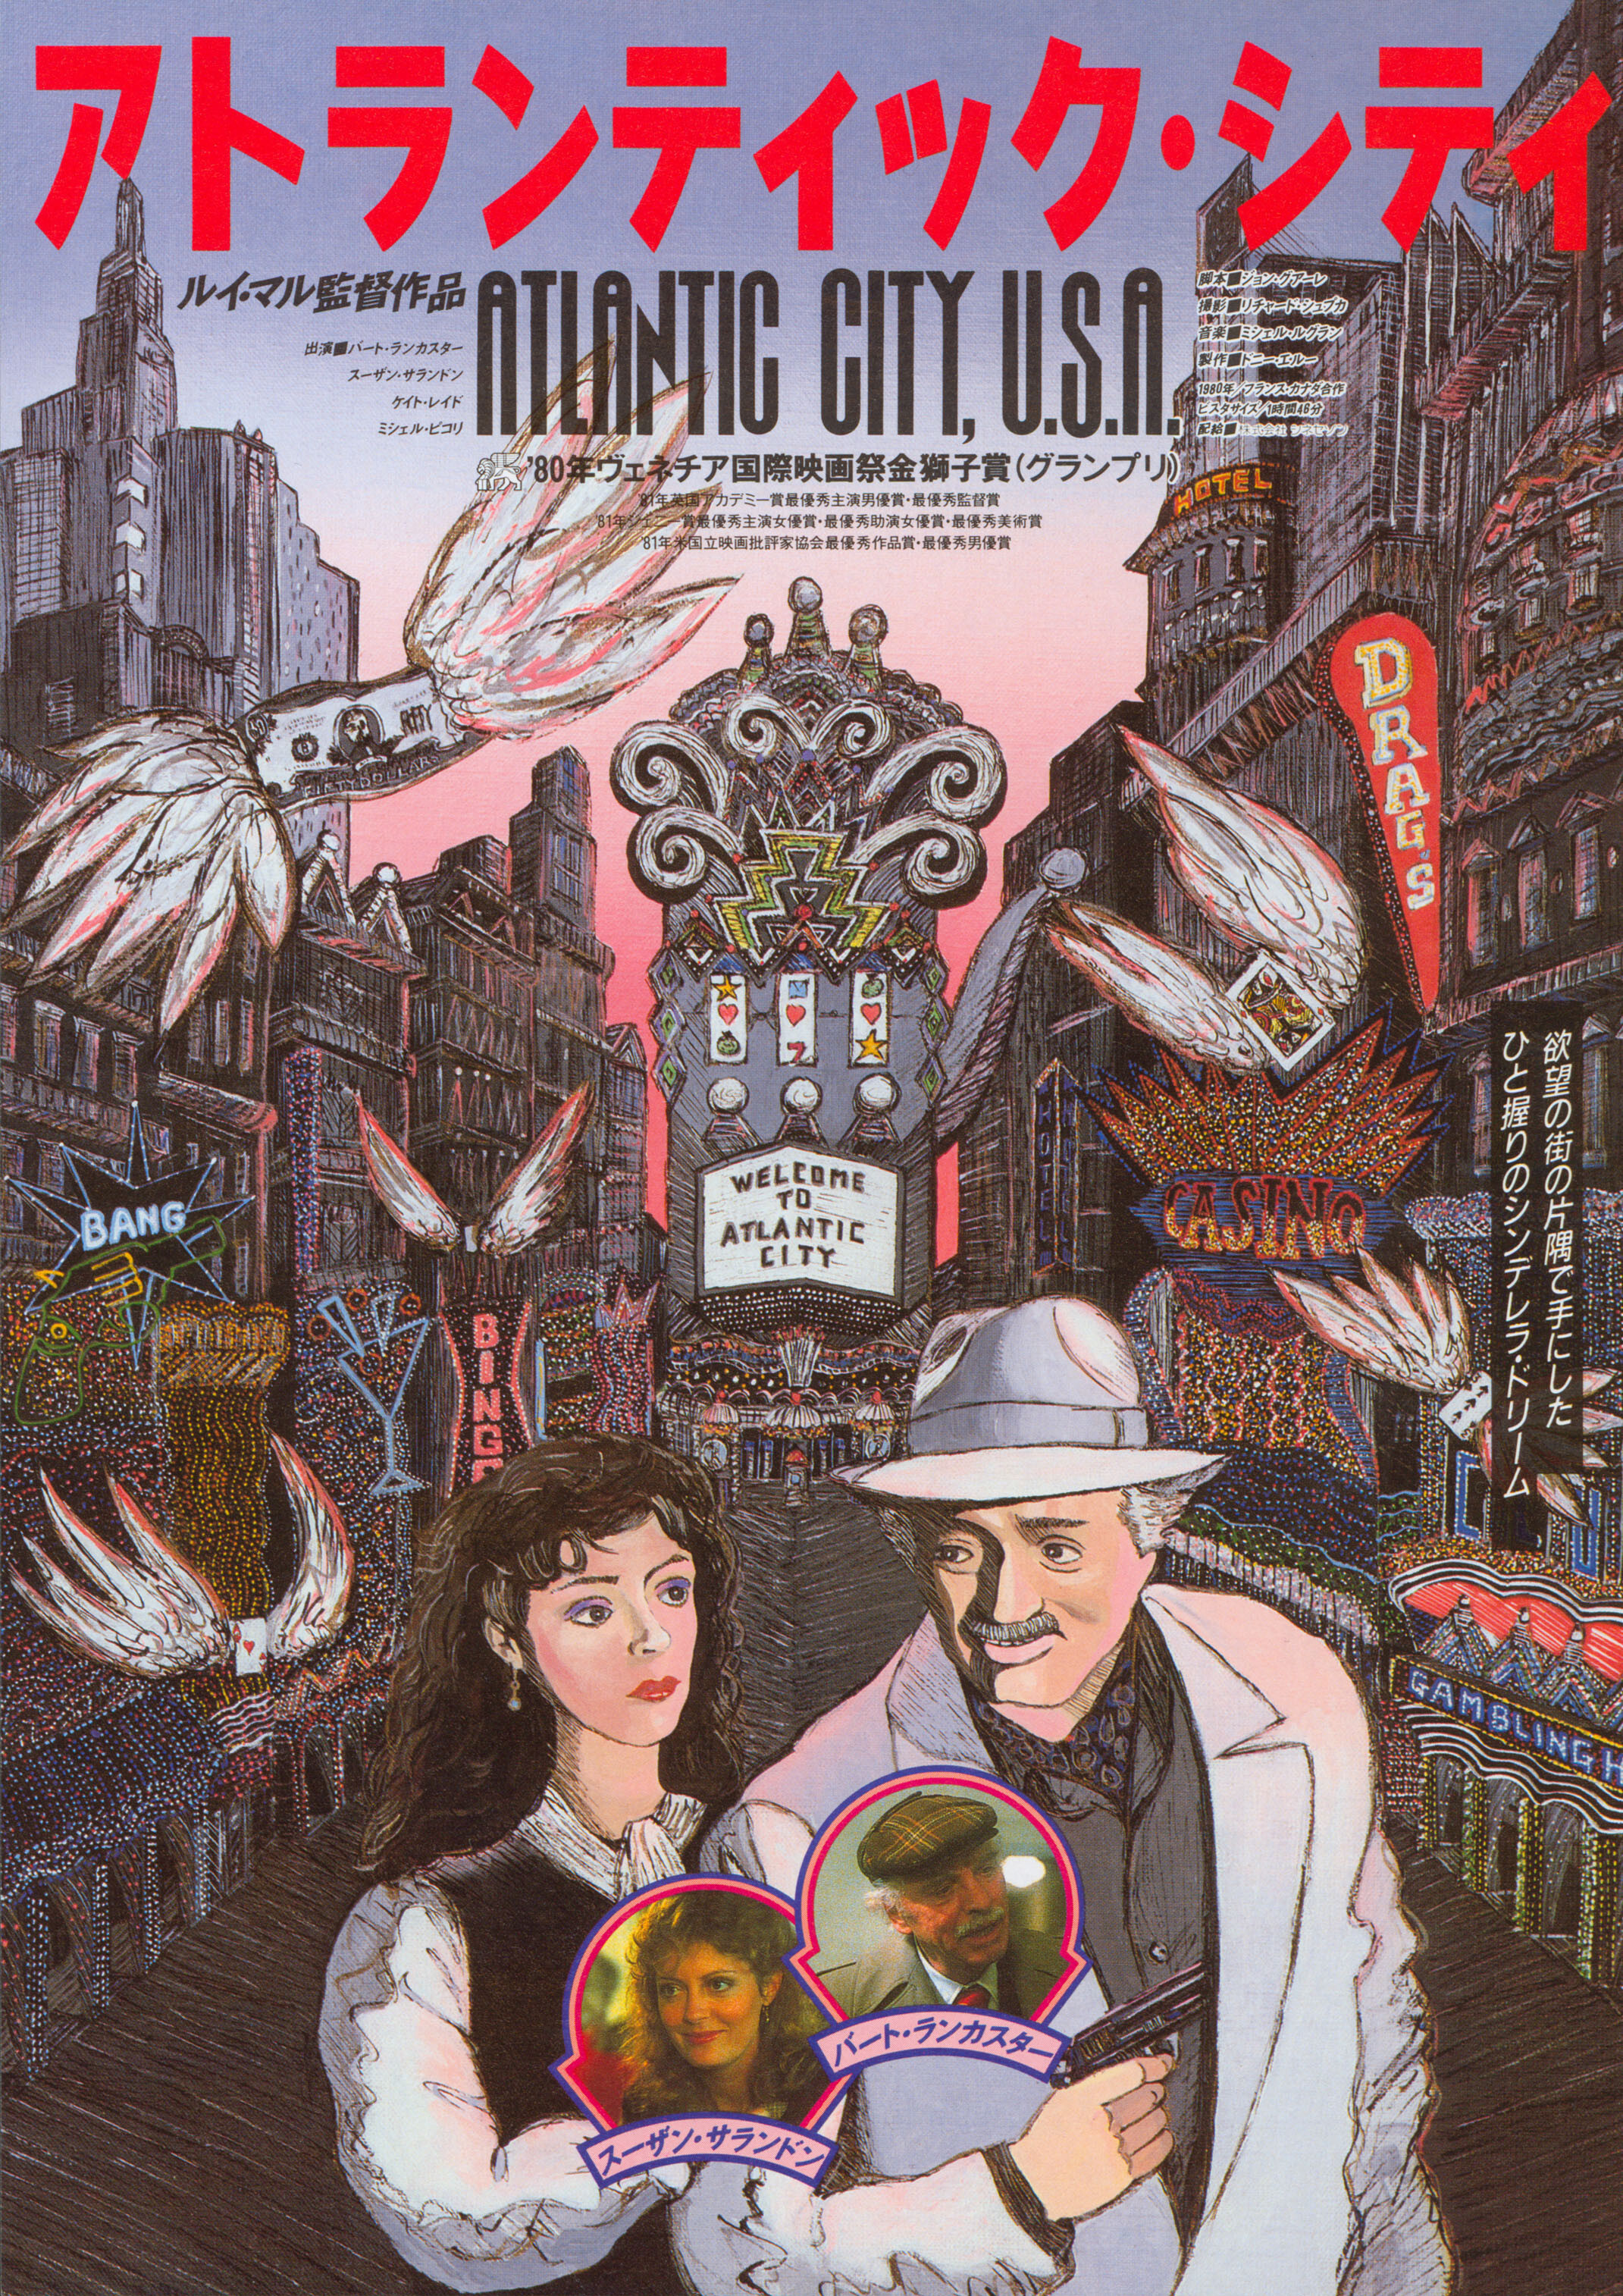 Атлантик-Сити (Atlantic City, 1980), режиссёр Луи Малль, иллюстрированный постер к фильму (Япония, 1980 год)